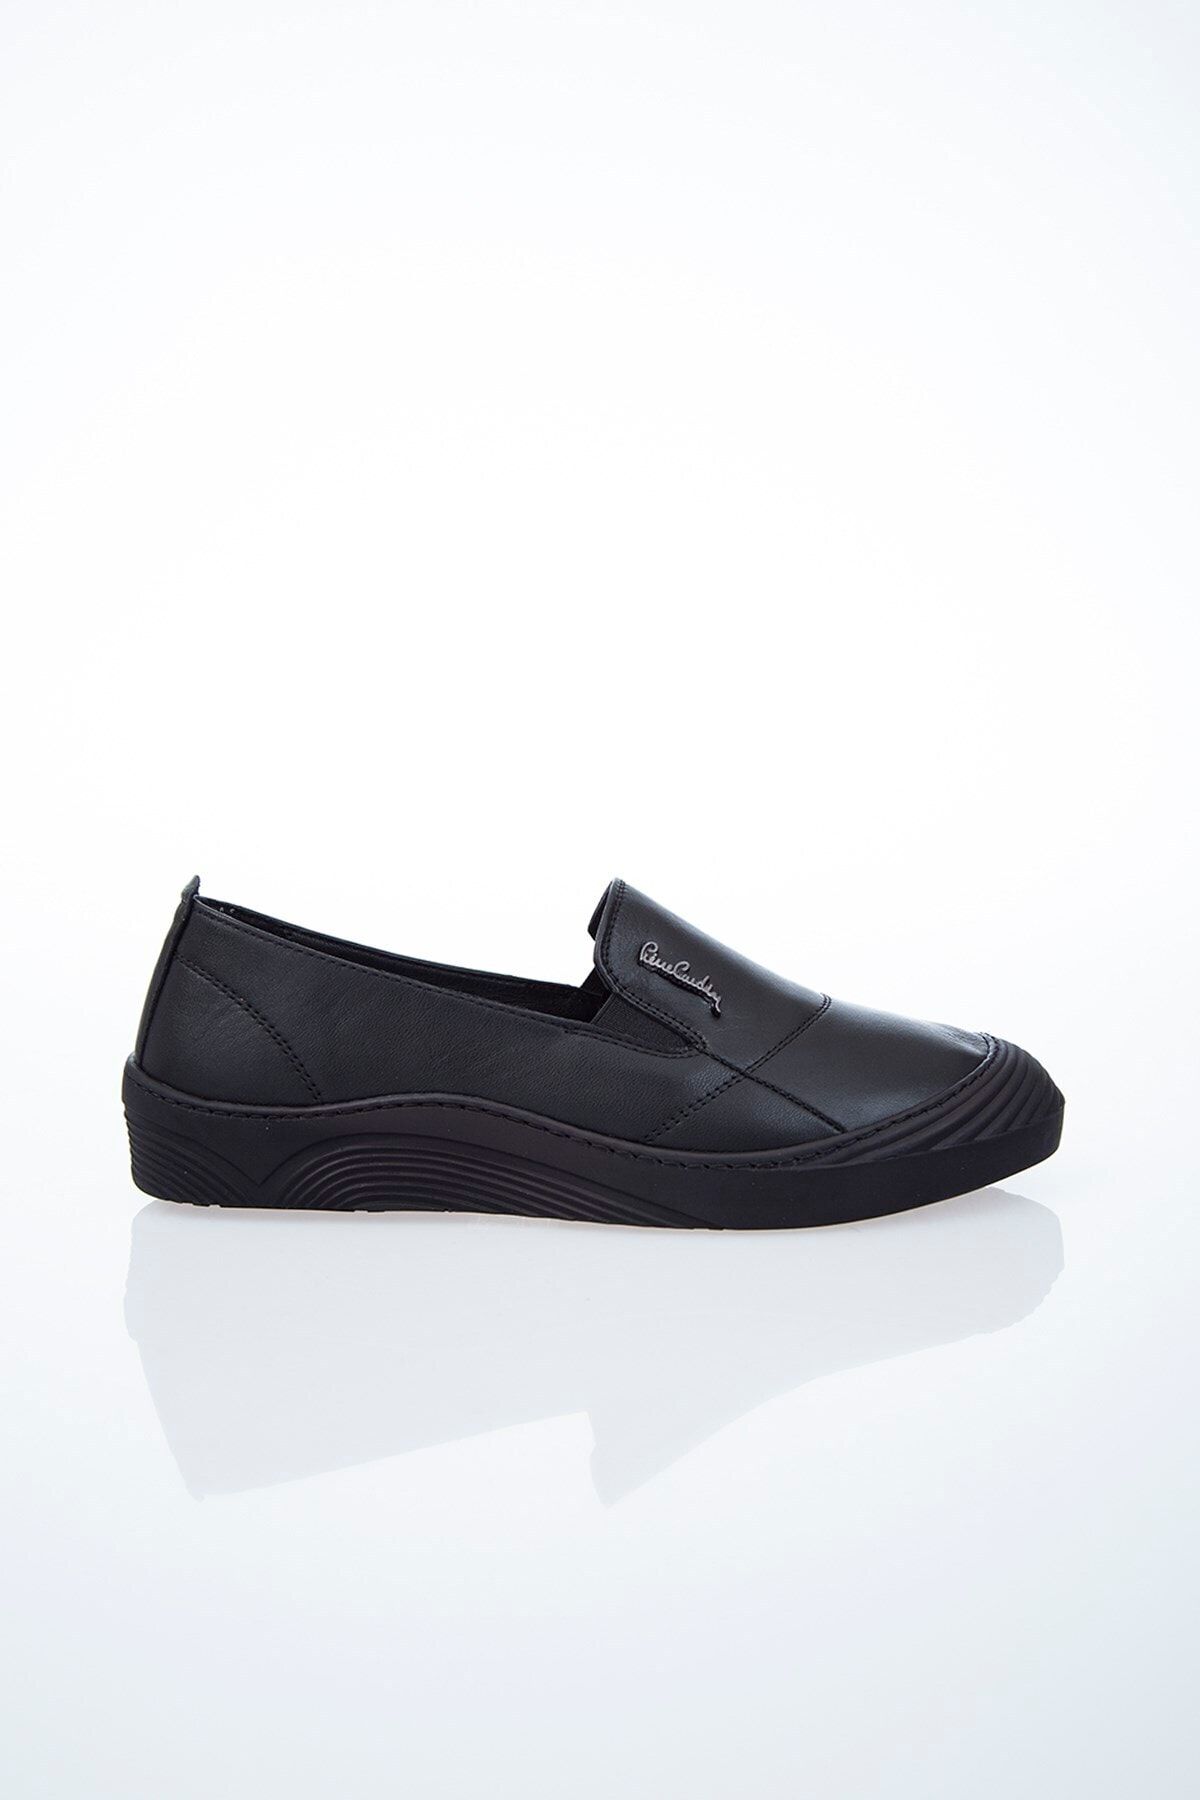 Pierre Cardin Pc-50261 Siyah Kadın Ayakkabı